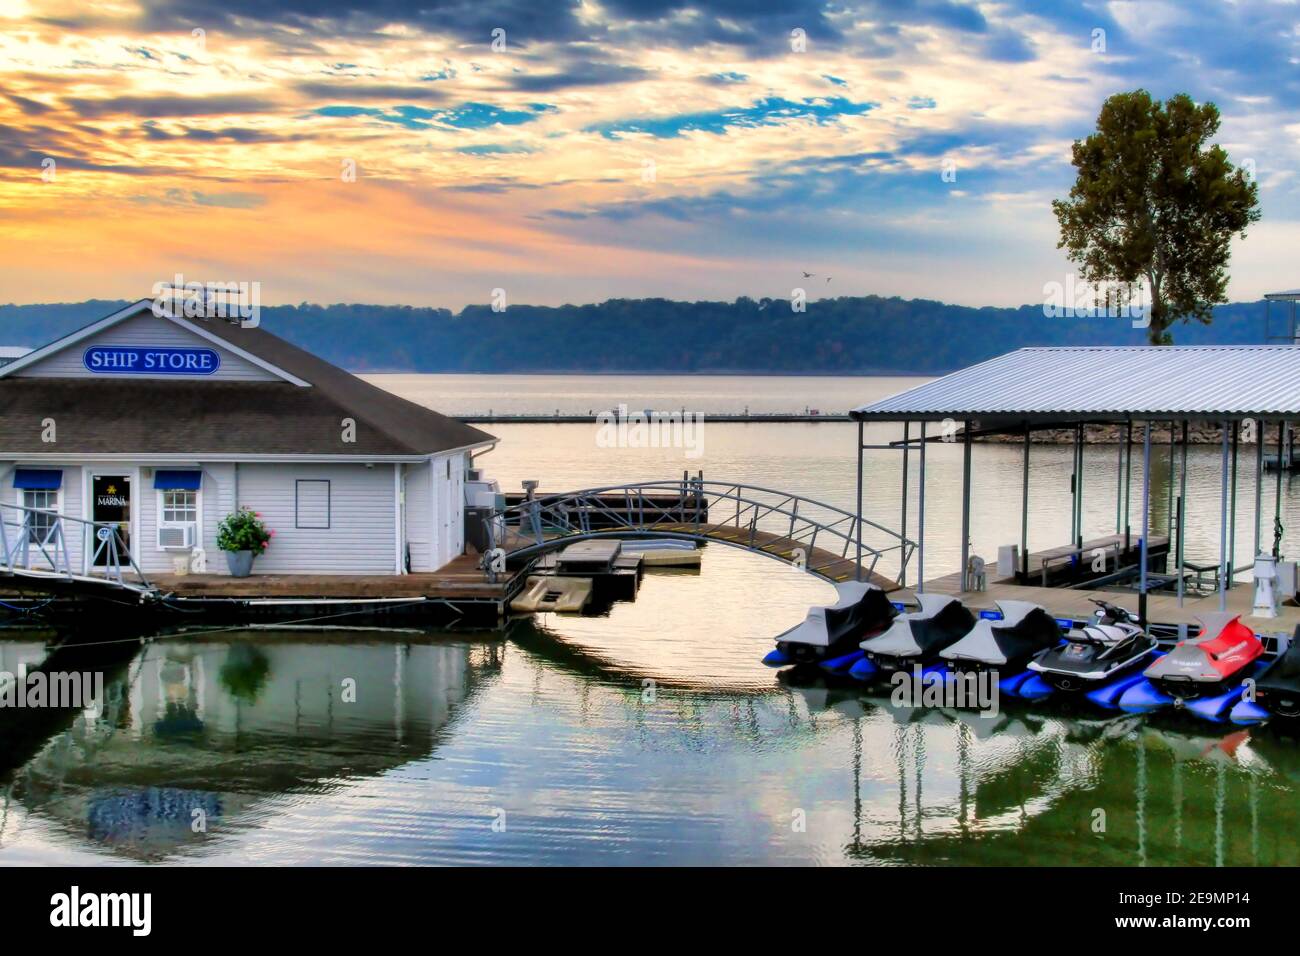 Das Shangri La ist ein bekanntes nordöstliches Oklahoma Resort auf Monkey Island am Grand Lake und genießt einen ruhigen und farbenfrohen Sonnenaufgang am frühen Morgen. Stockfoto